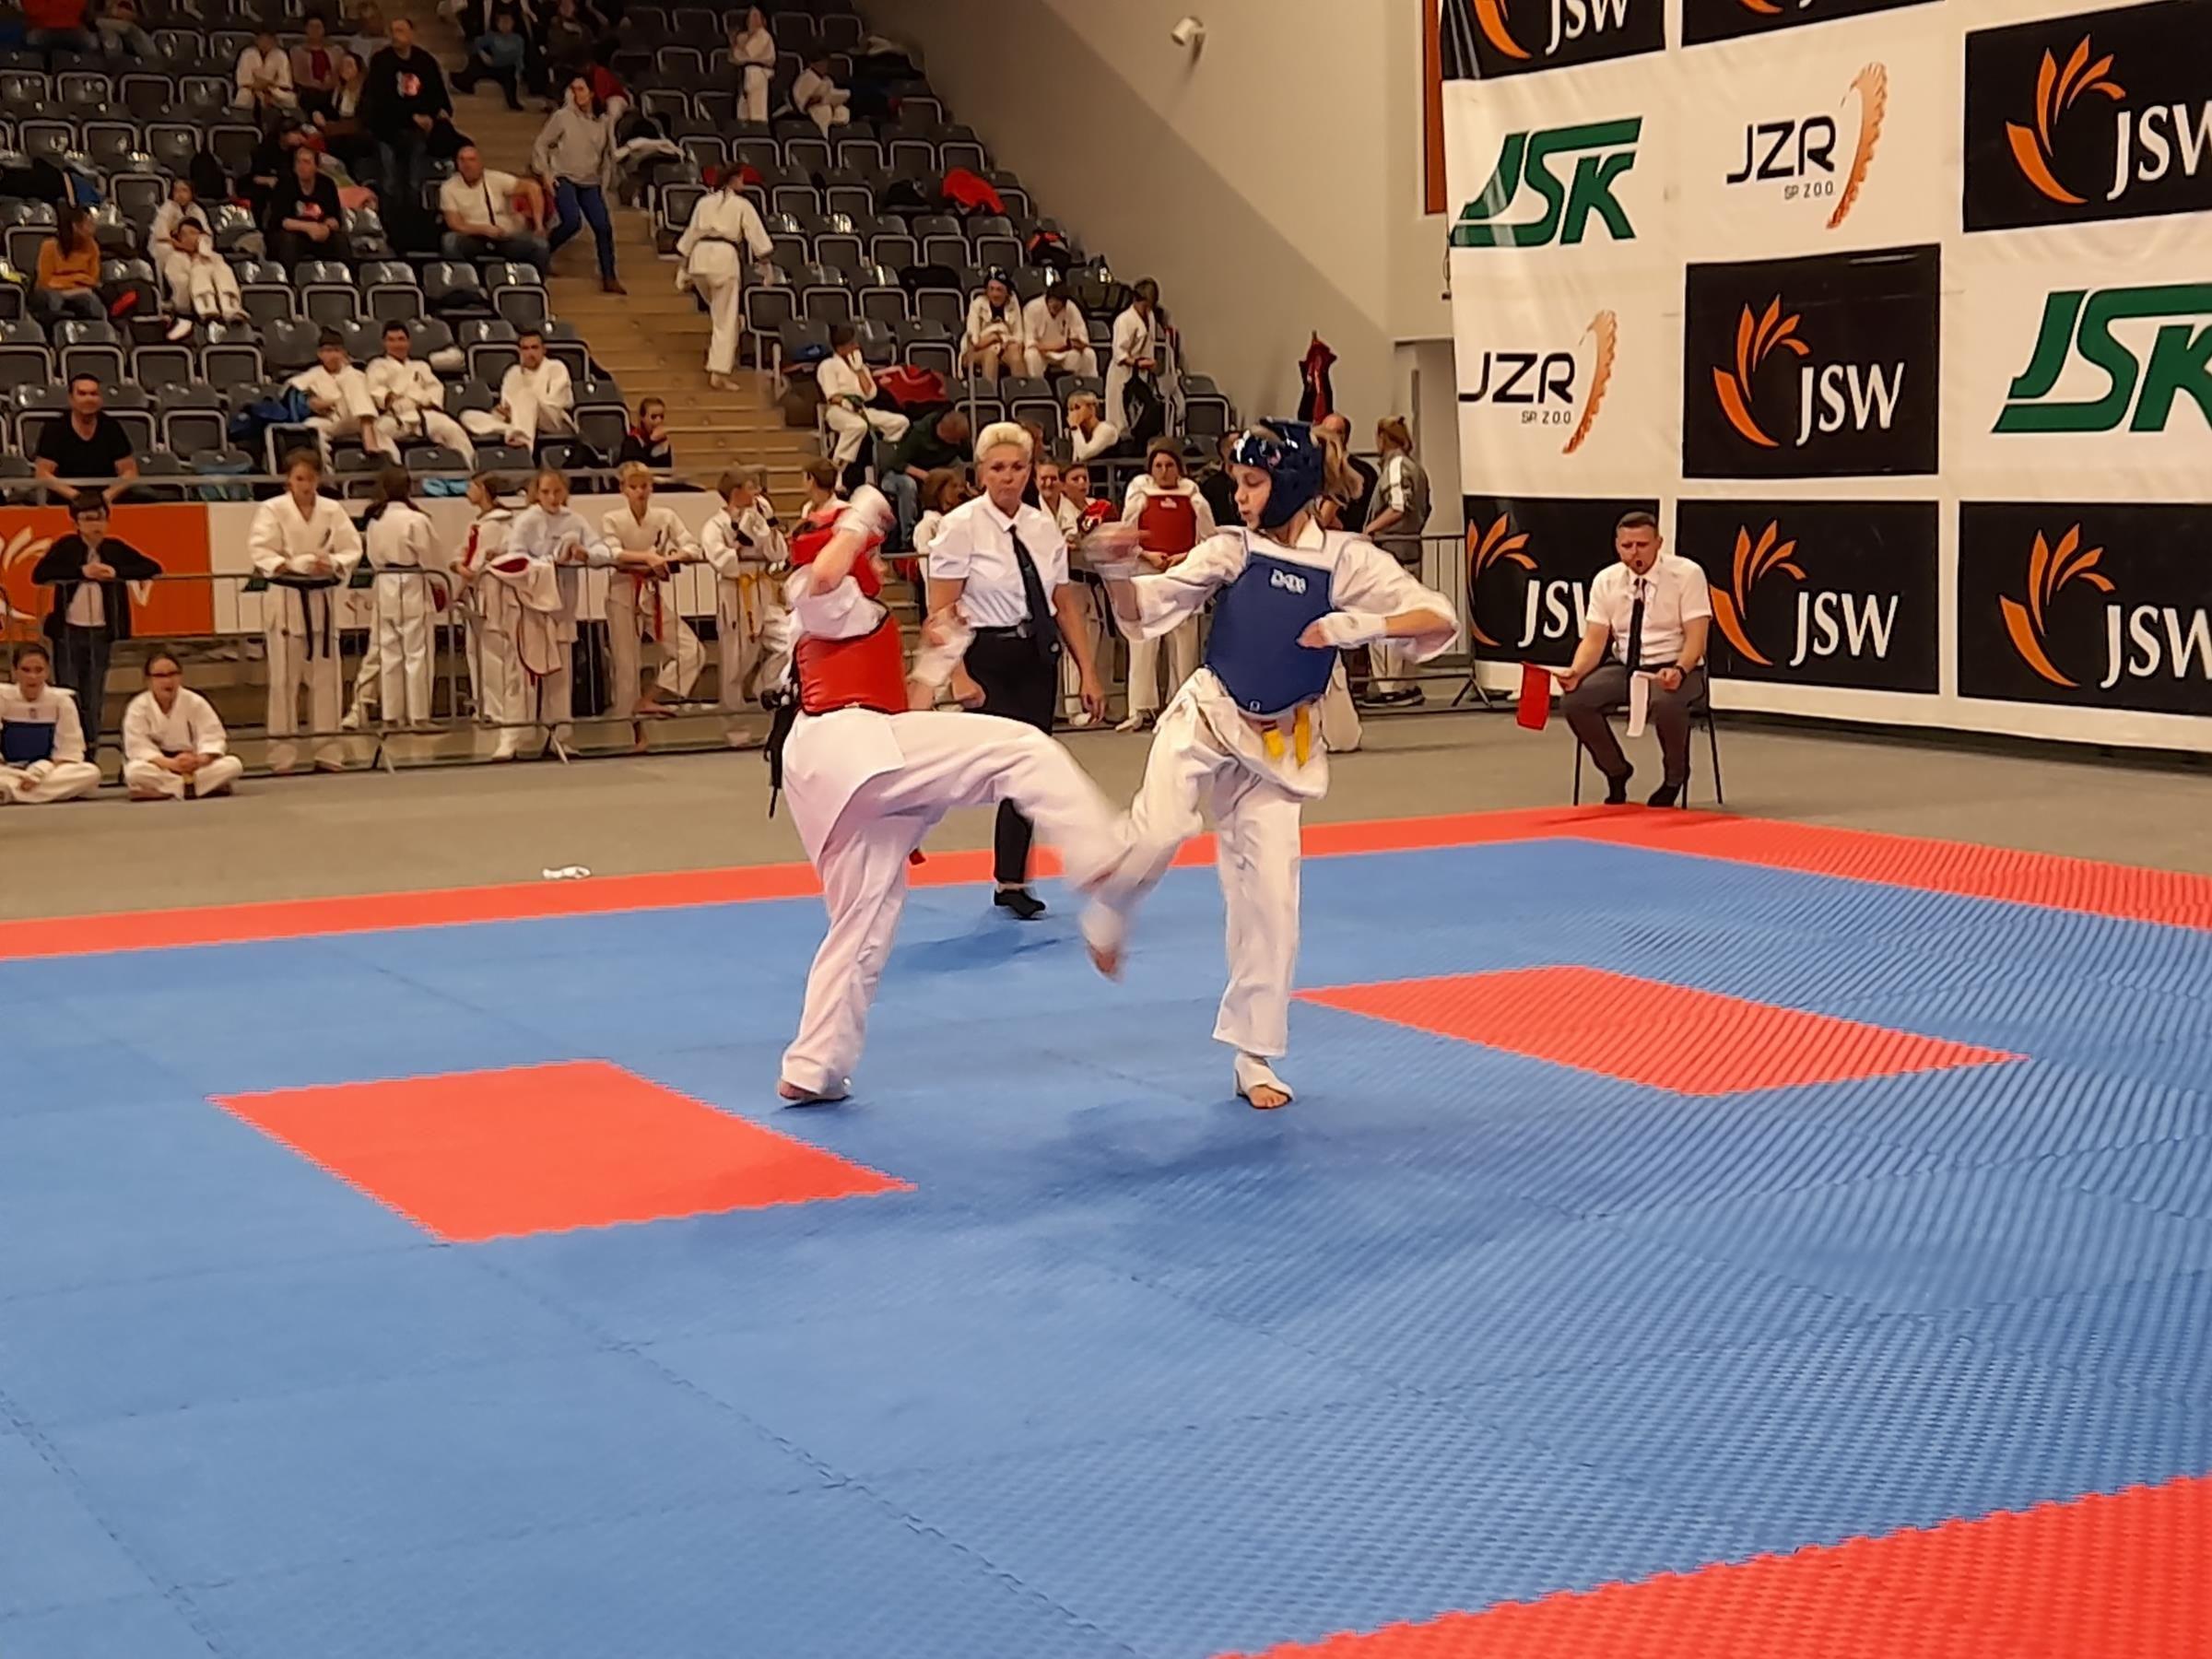 Zdj. nr. 1. XIII Międzynarodowy Turniej Karate Kyokushin CARBON CUP – 30.10.2021 r., Jastrzębie Zdrój